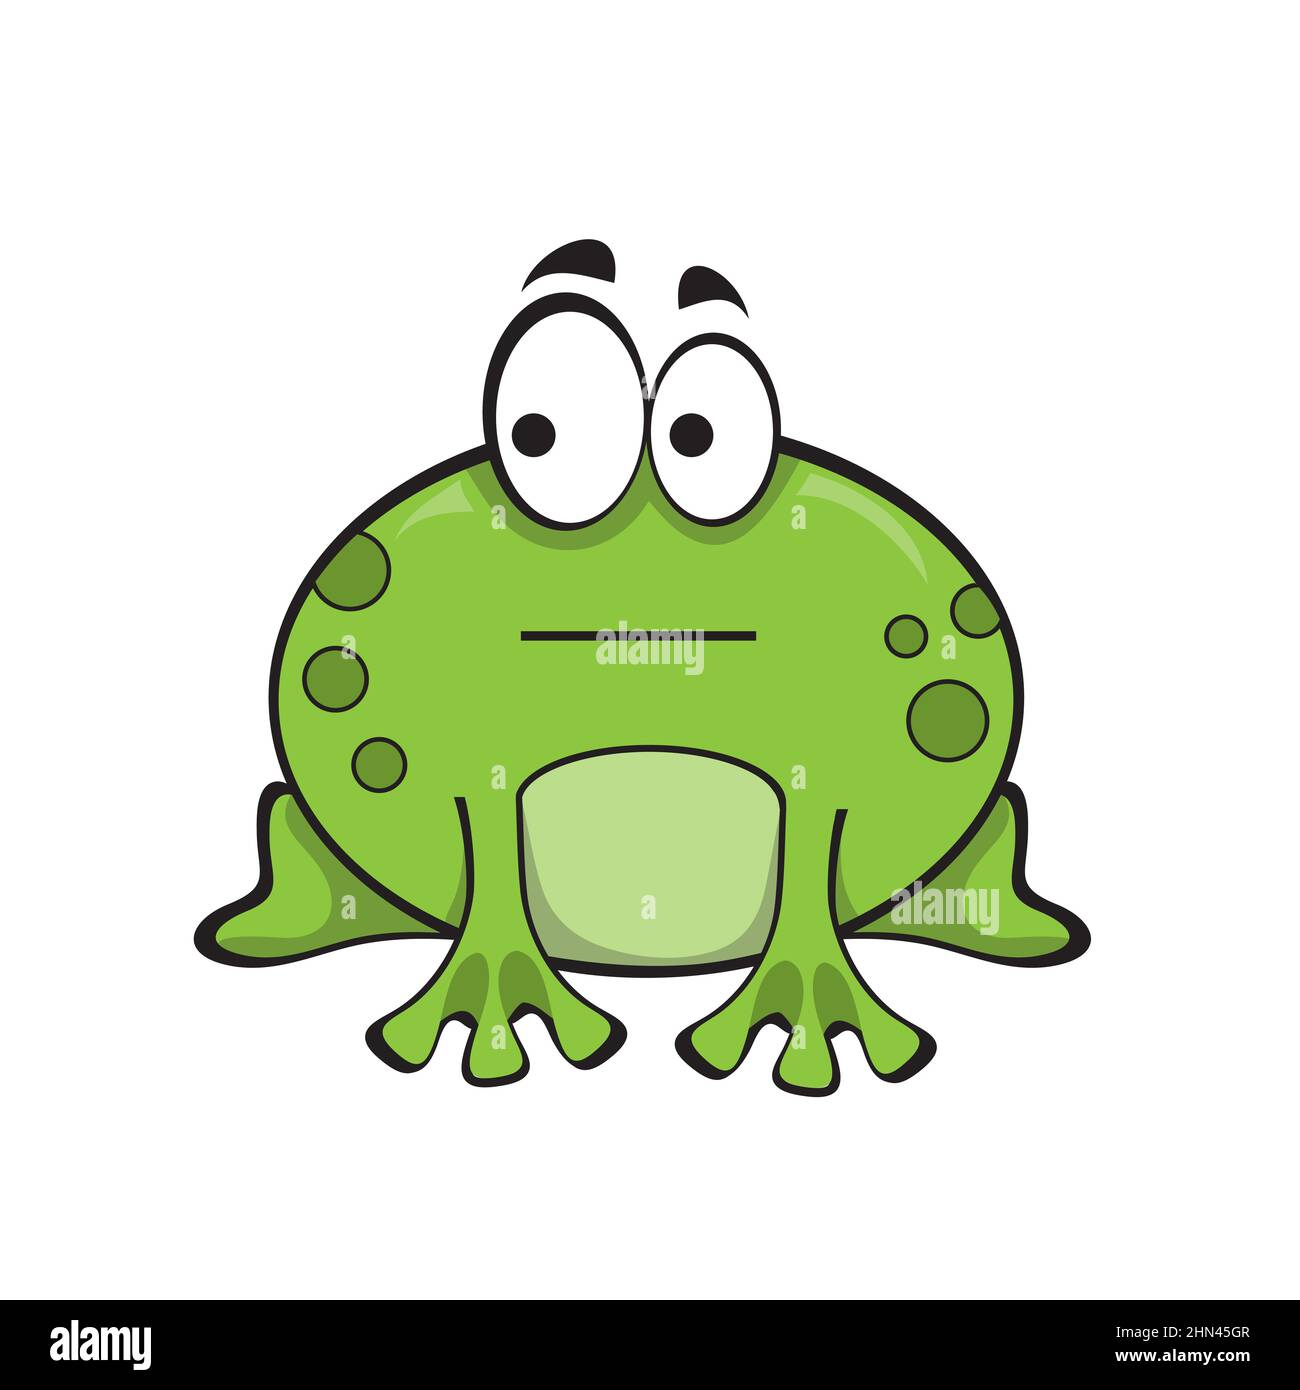 Grenouille verte mignonne avec émotion indifférente. La grenouille regarde sur le côté. Icône de dessin animé sur blanc Illustration de Vecteur